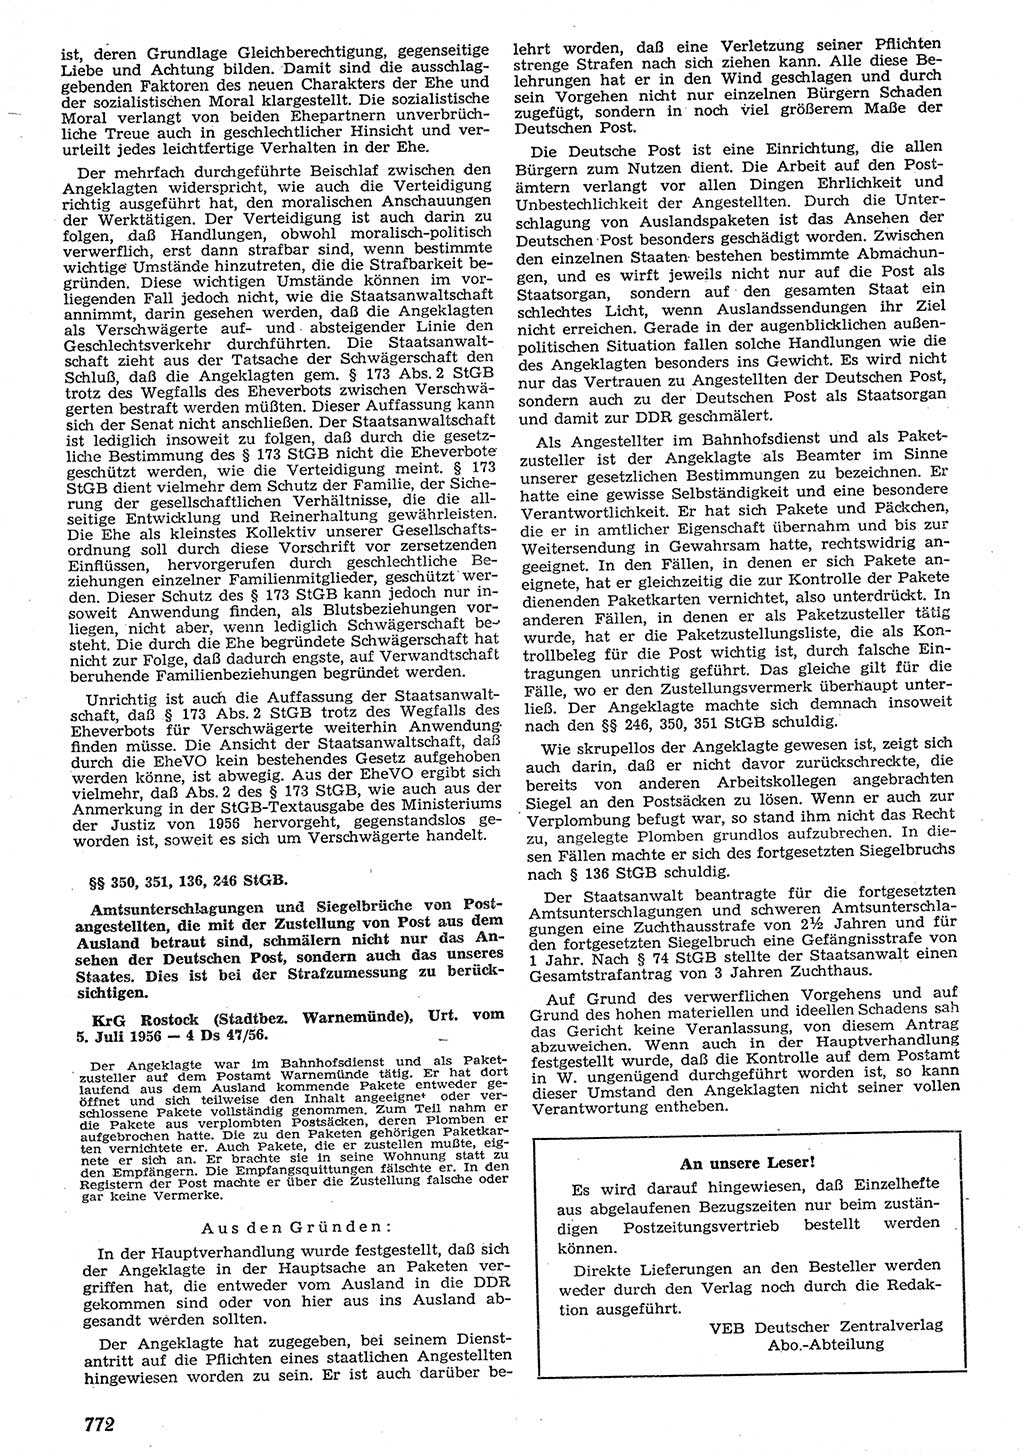 Neue Justiz (NJ), Zeitschrift für Recht und Rechtswissenschaft [Deutsche Demokratische Republik (DDR)], 10. Jahrgang 1956, Seite 772 (NJ DDR 1956, S. 772)